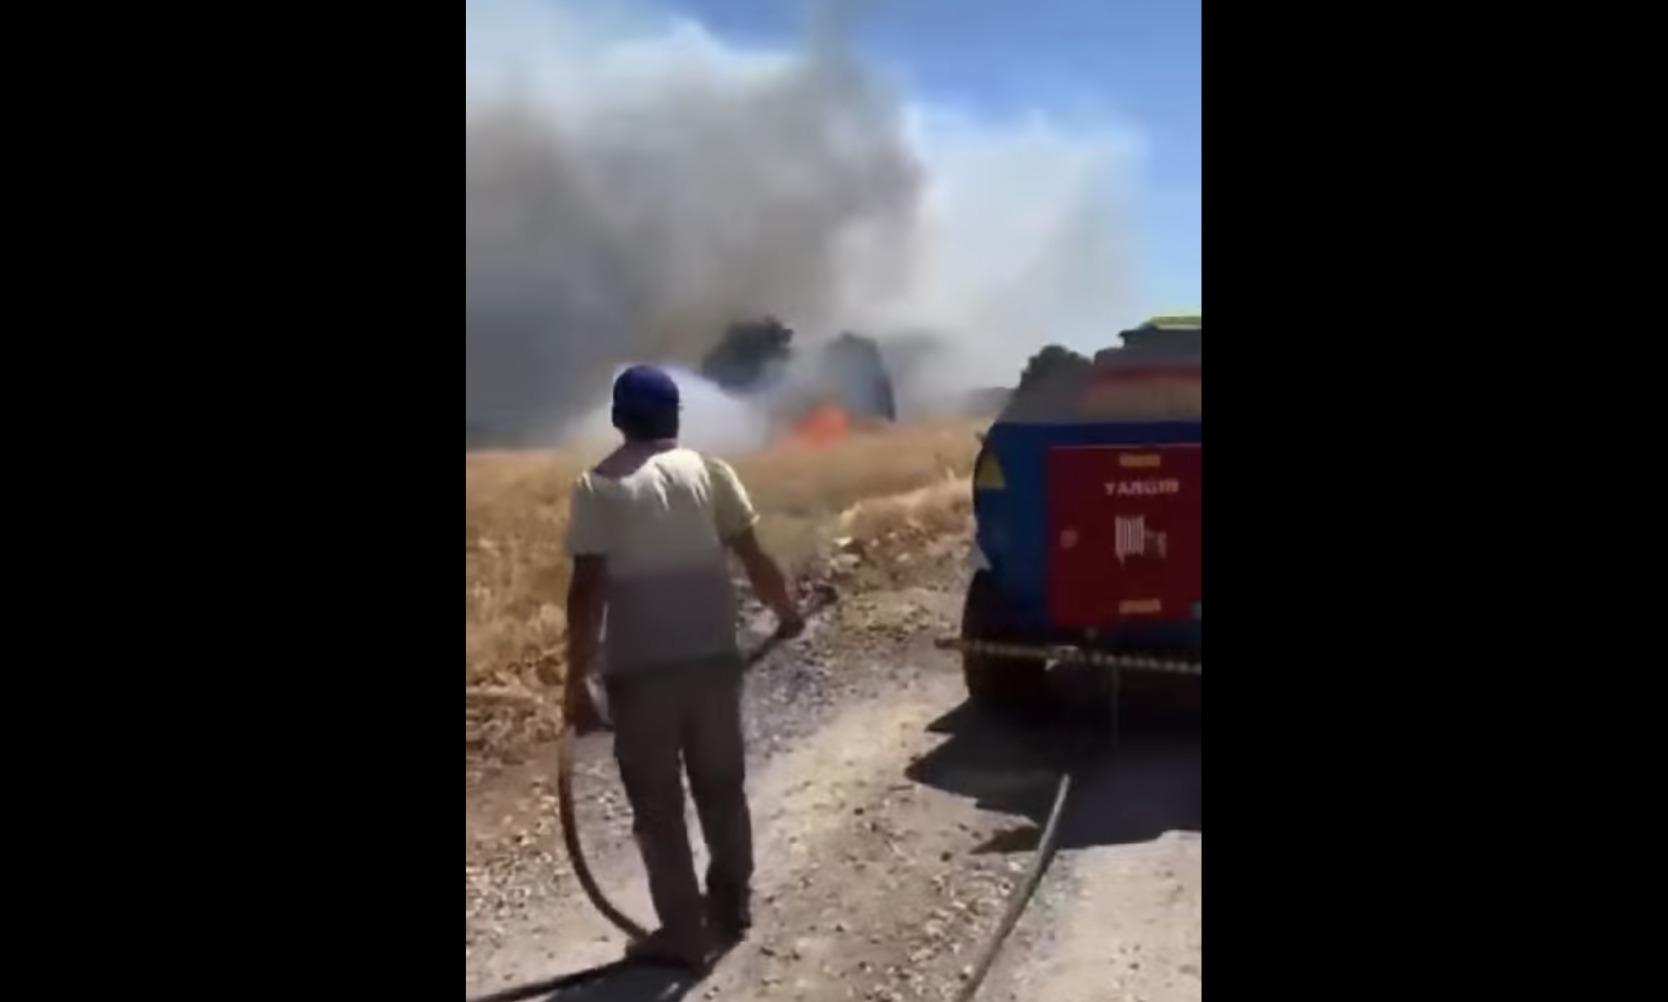 Χωράφια με σιτηρά καίγονται ταυτόχρονα σε επτά διαφορετικές περιοχές της…Τουρκίας. Οι Ελίτ καταστρέφουν πηγές τροφίμων ΠΑΝΤΟΥ!!!